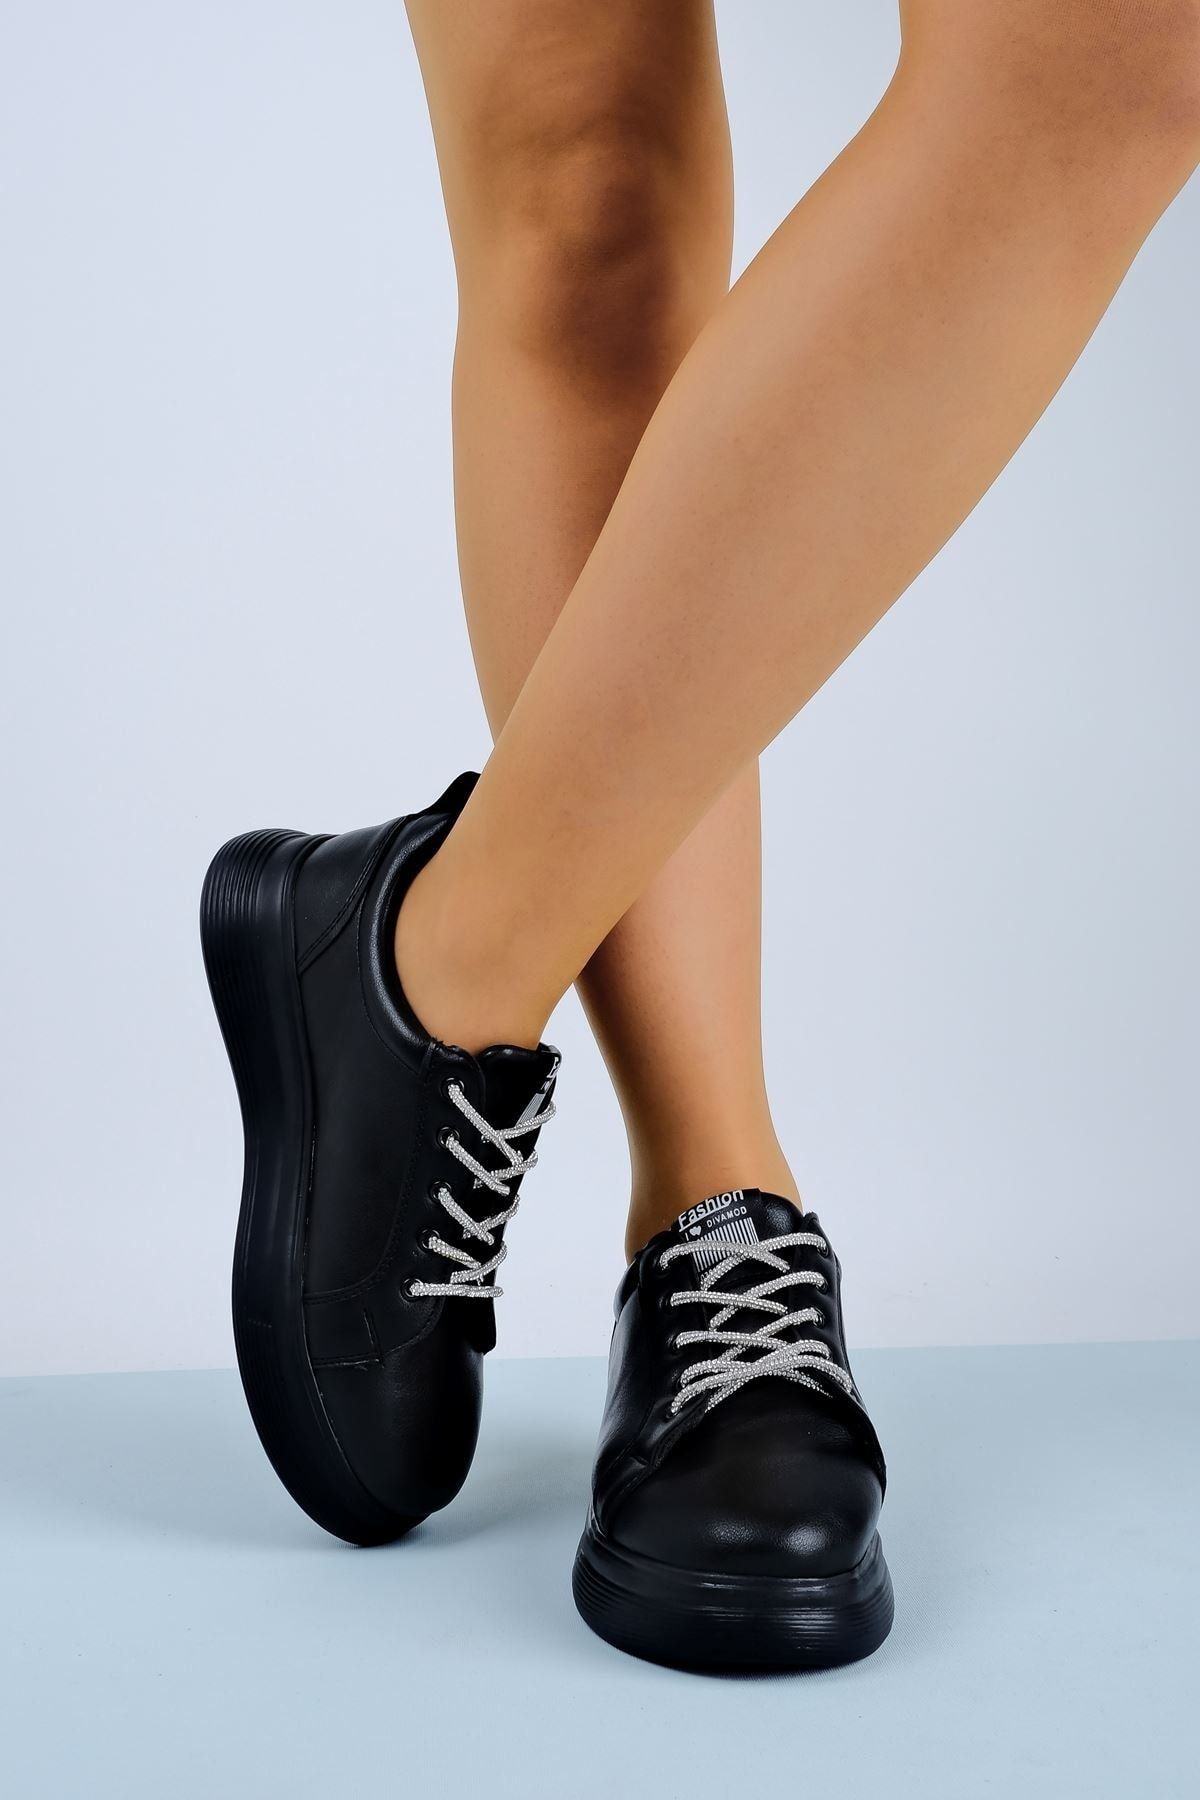 LAL SHOES & BAGS Kadın Spor Ayakkabı Bağcık Parlak Taşlı-siyah